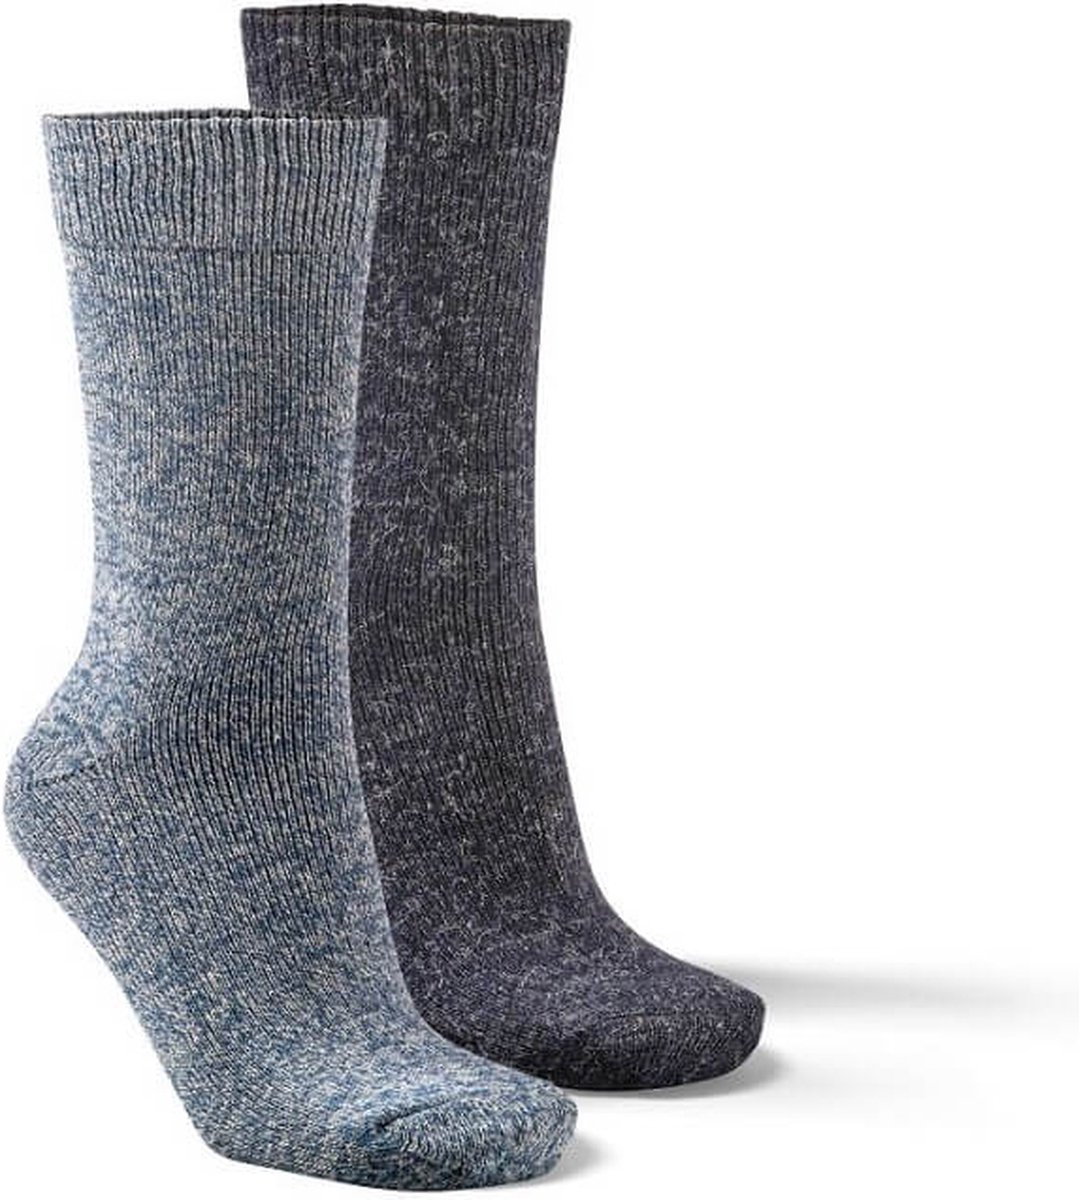 Fellhof Alpaca sokken maat 43-46 – blauw/donkerblauw – alpacawol – wollen sokken – warme sokken temperatuurregulerend – vochtregulerend – geurloos – ademend – comfortabel – zacht